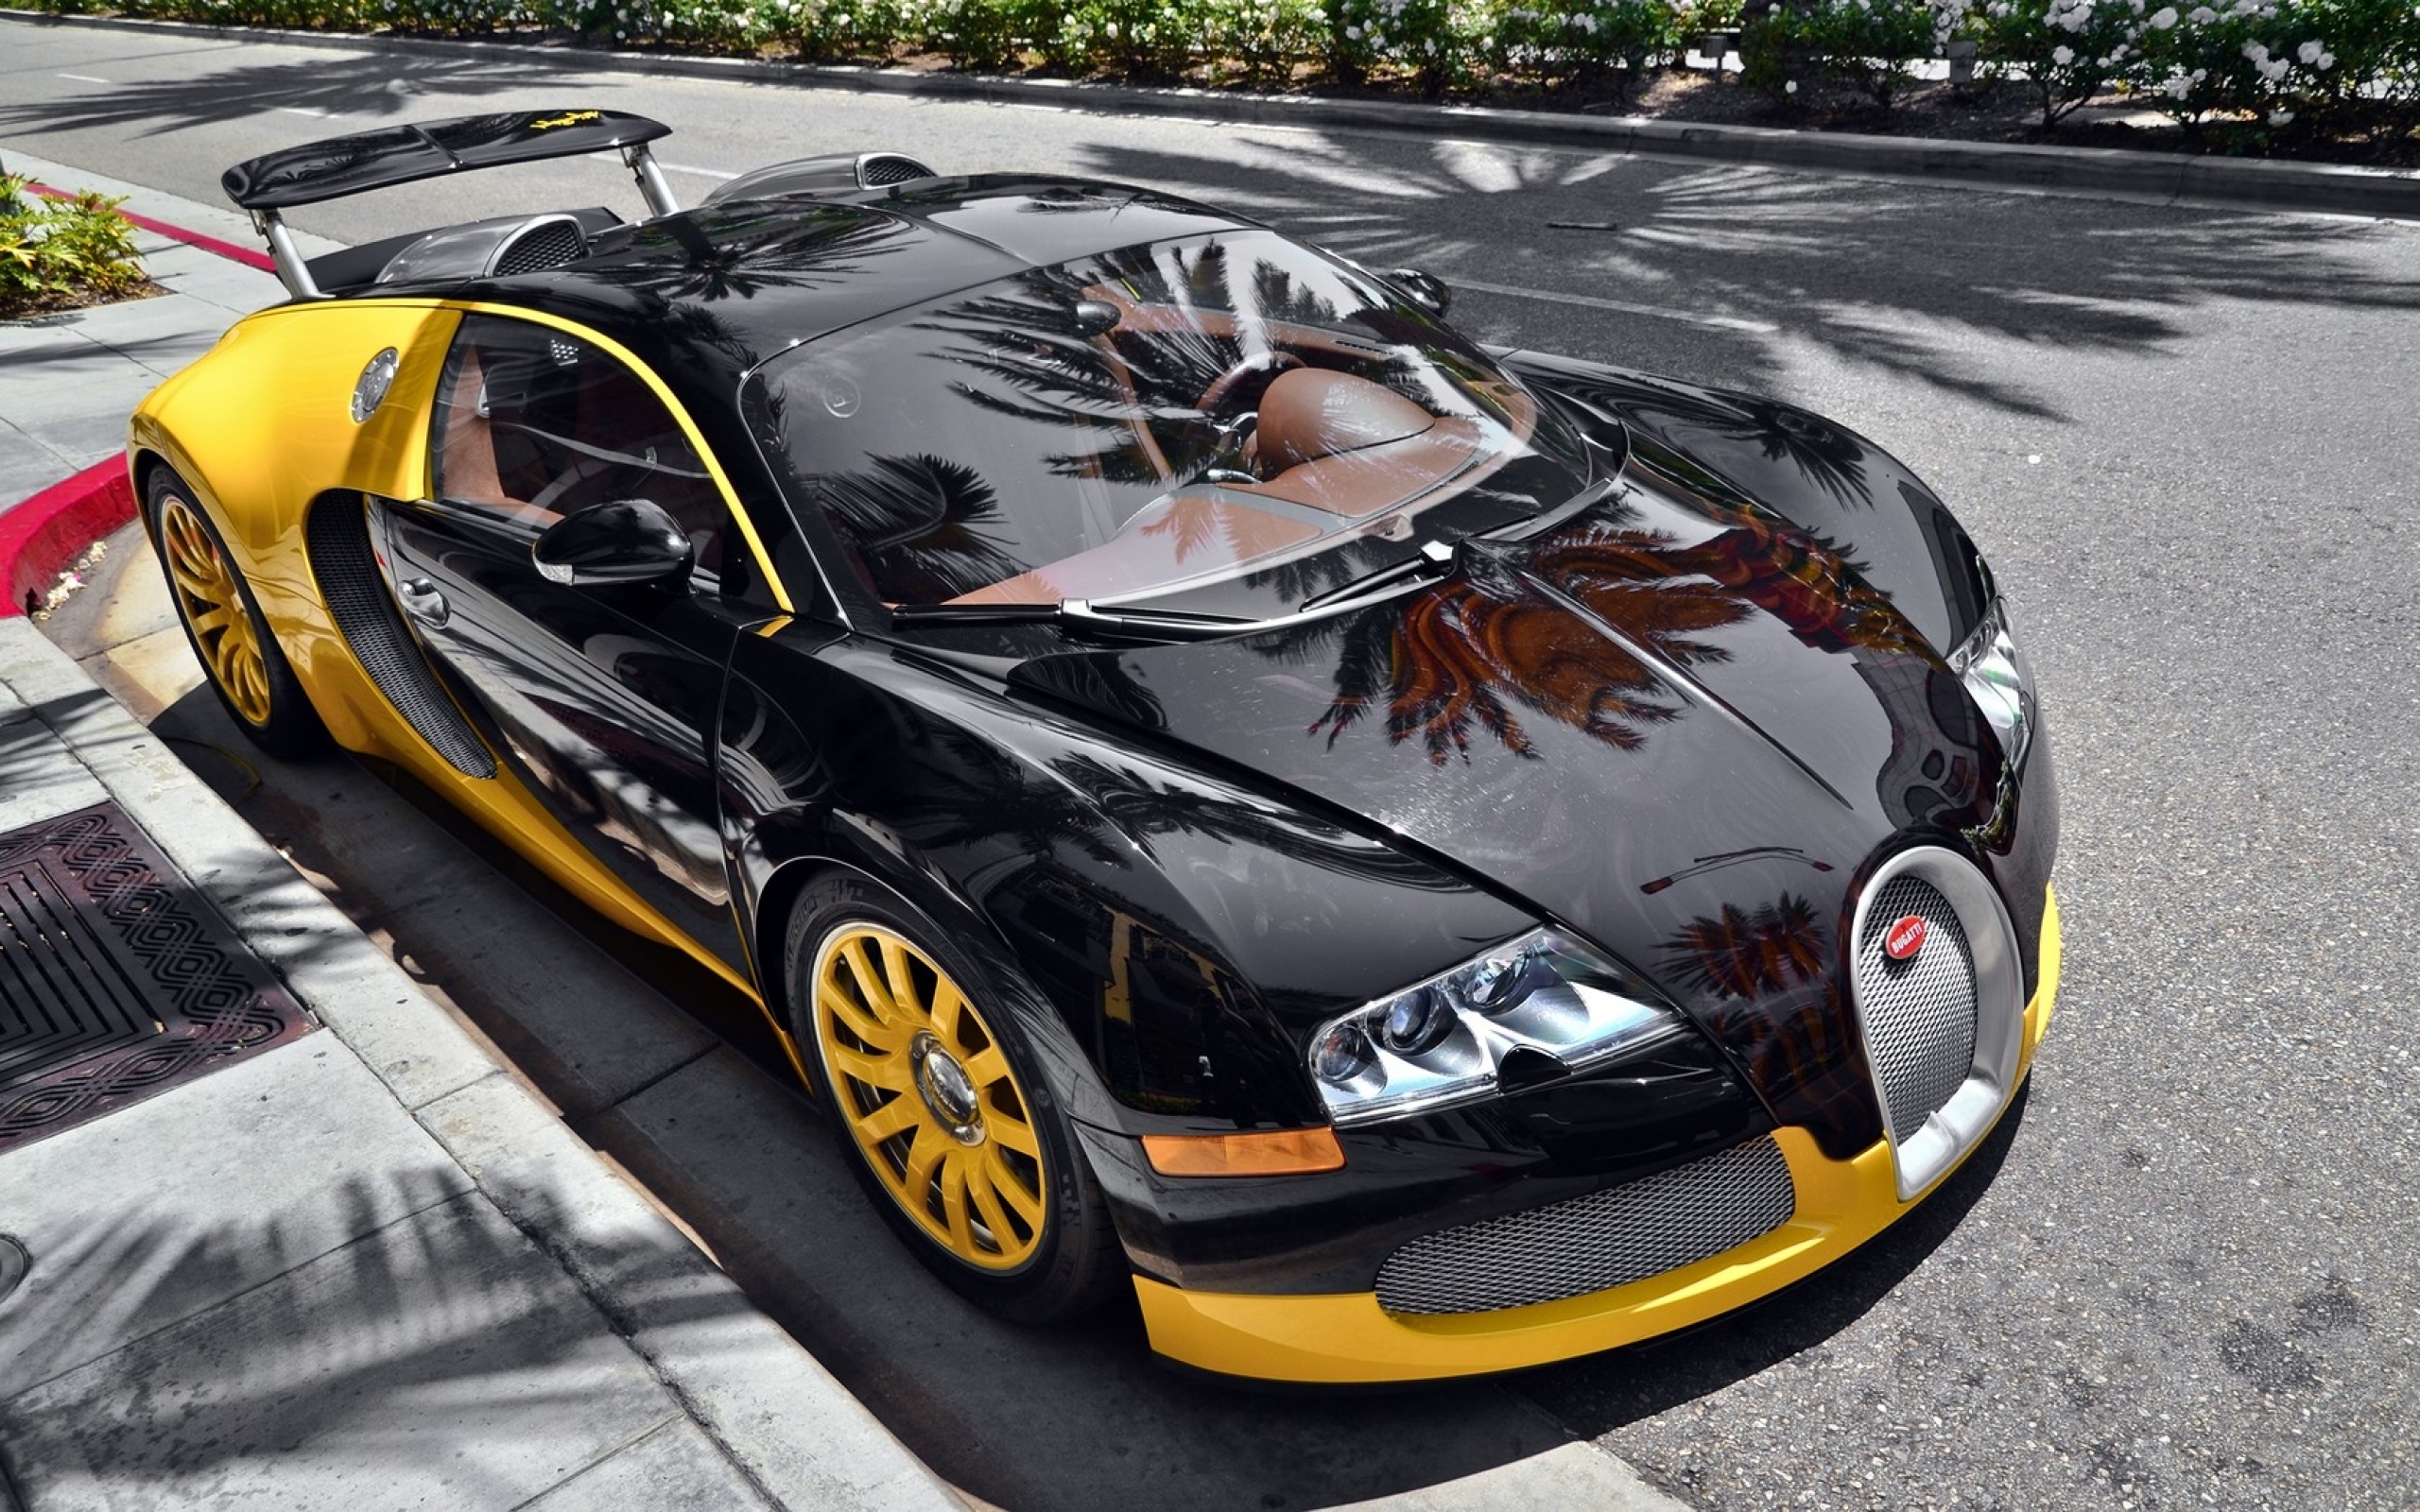 Bugatti Veyron HD Wallpaper Background Image